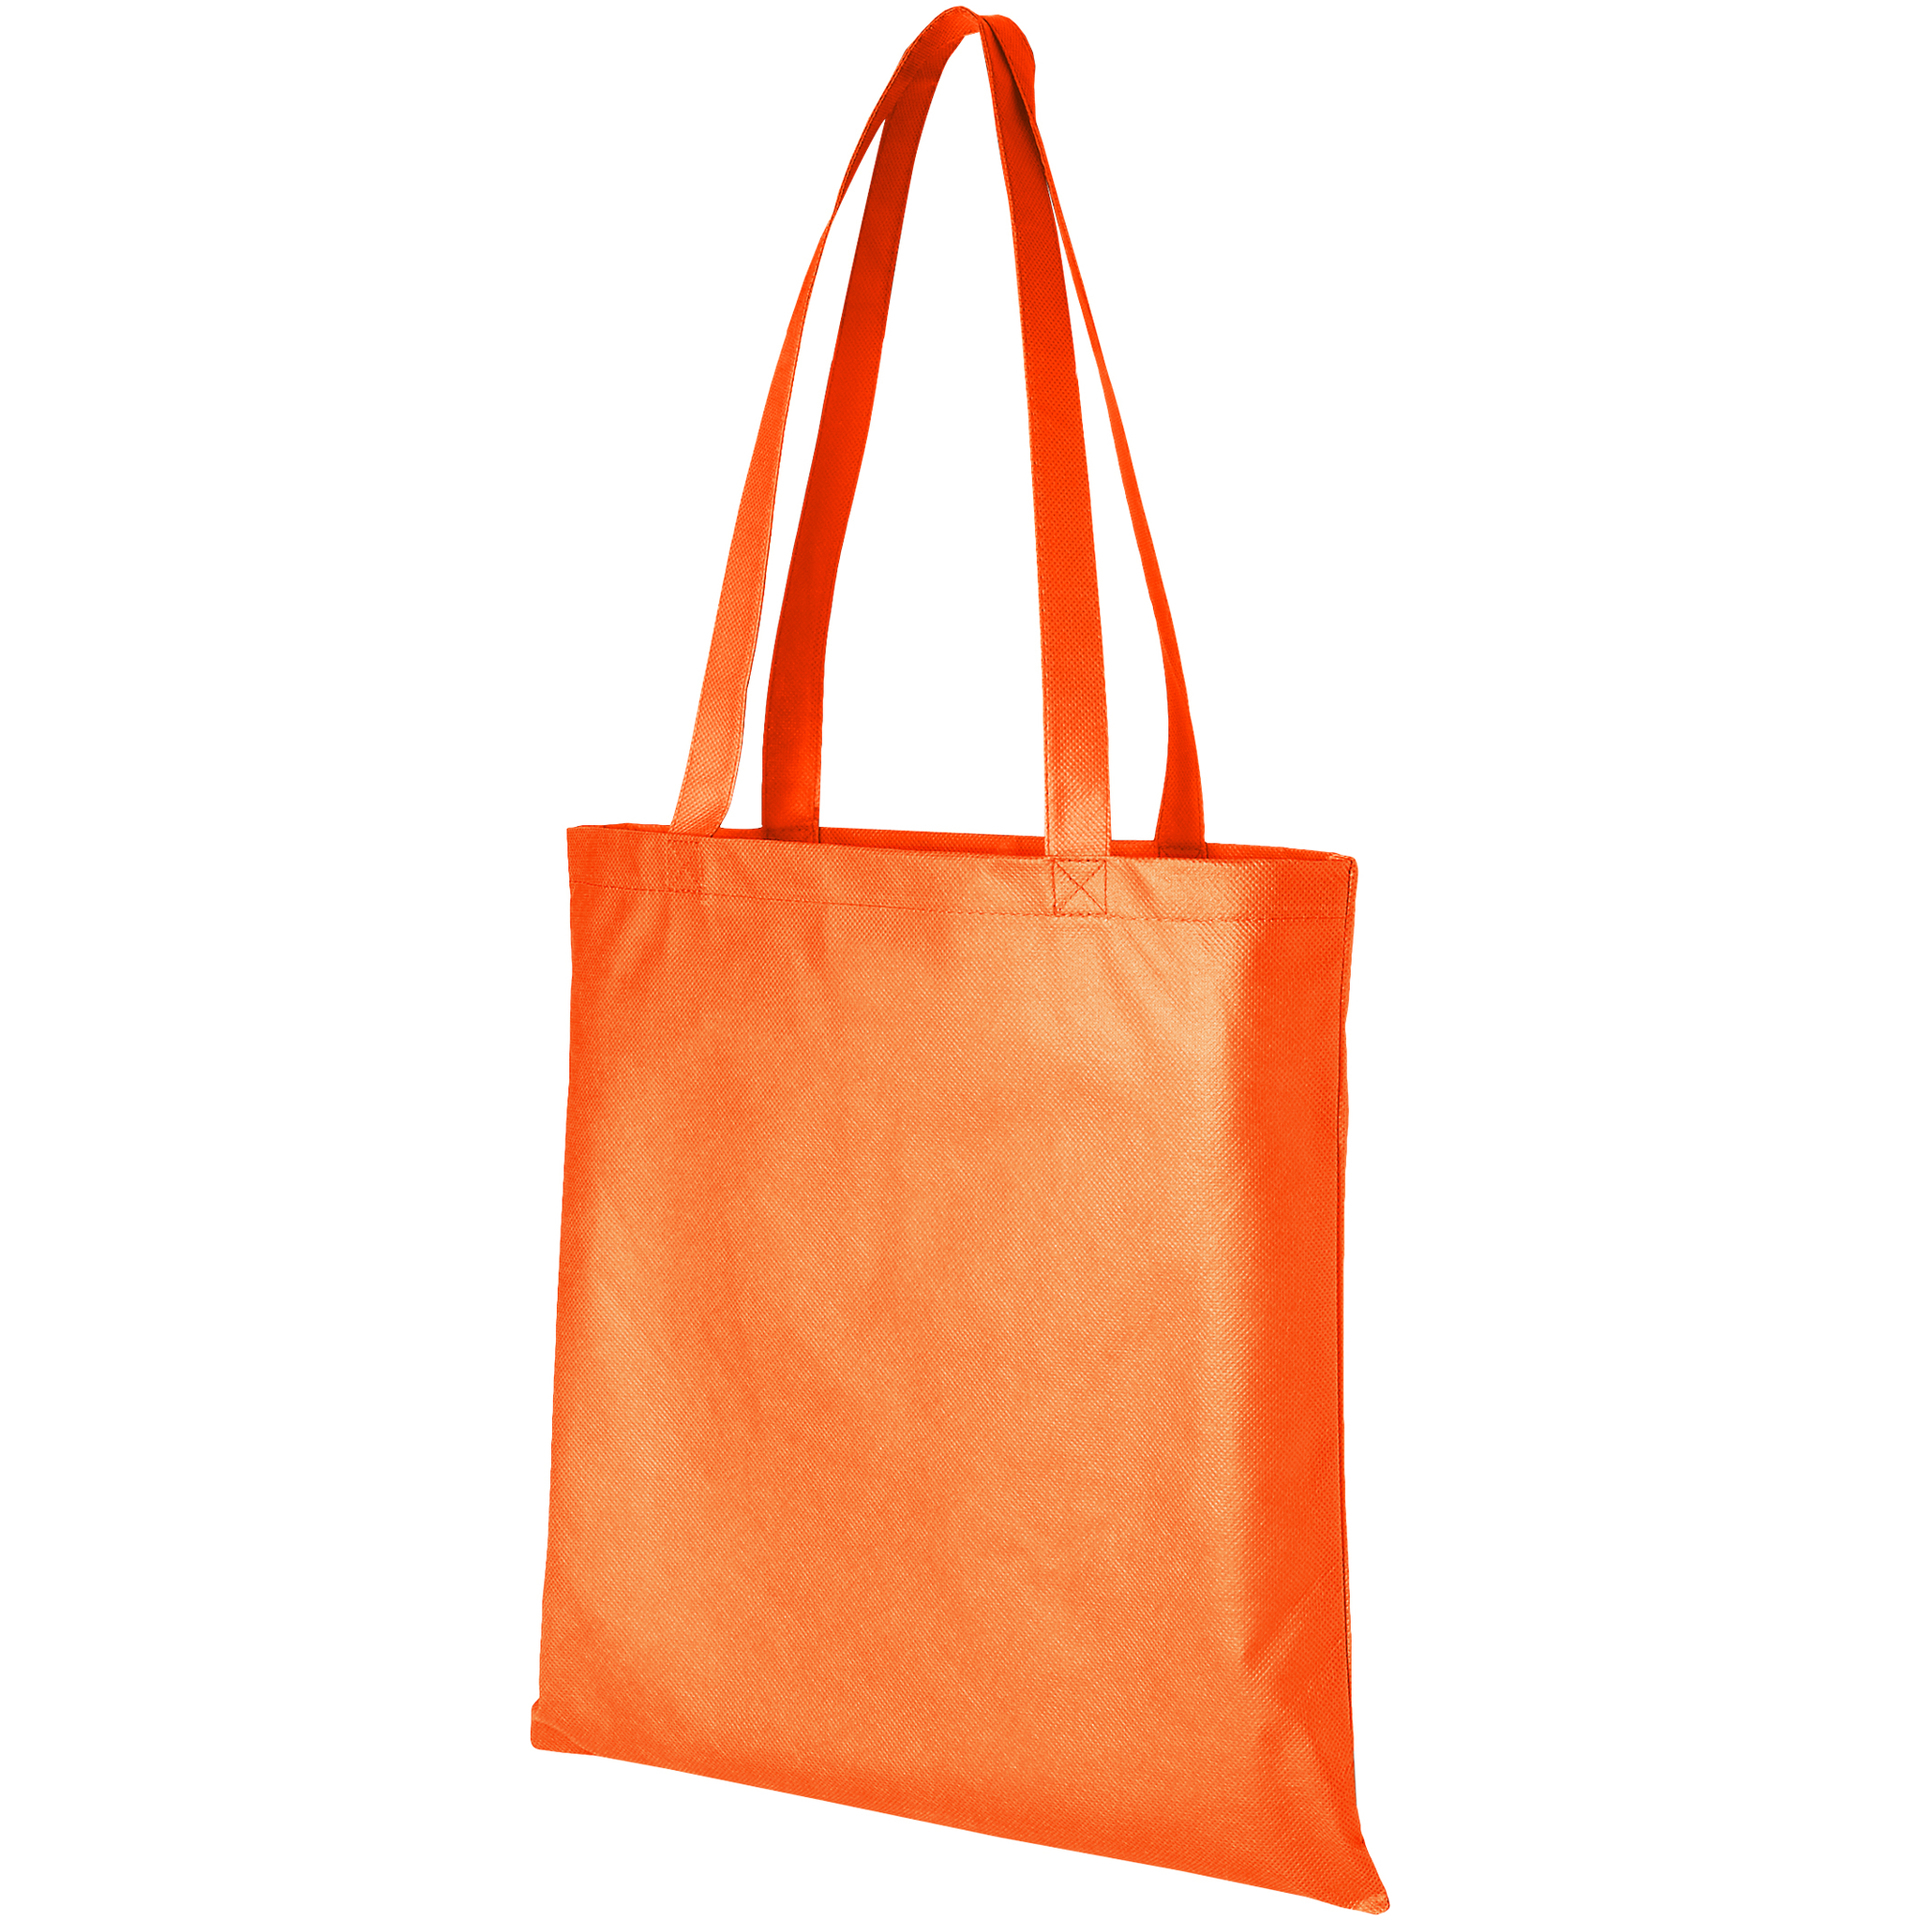 Orange non-woven shopper bag with long handles